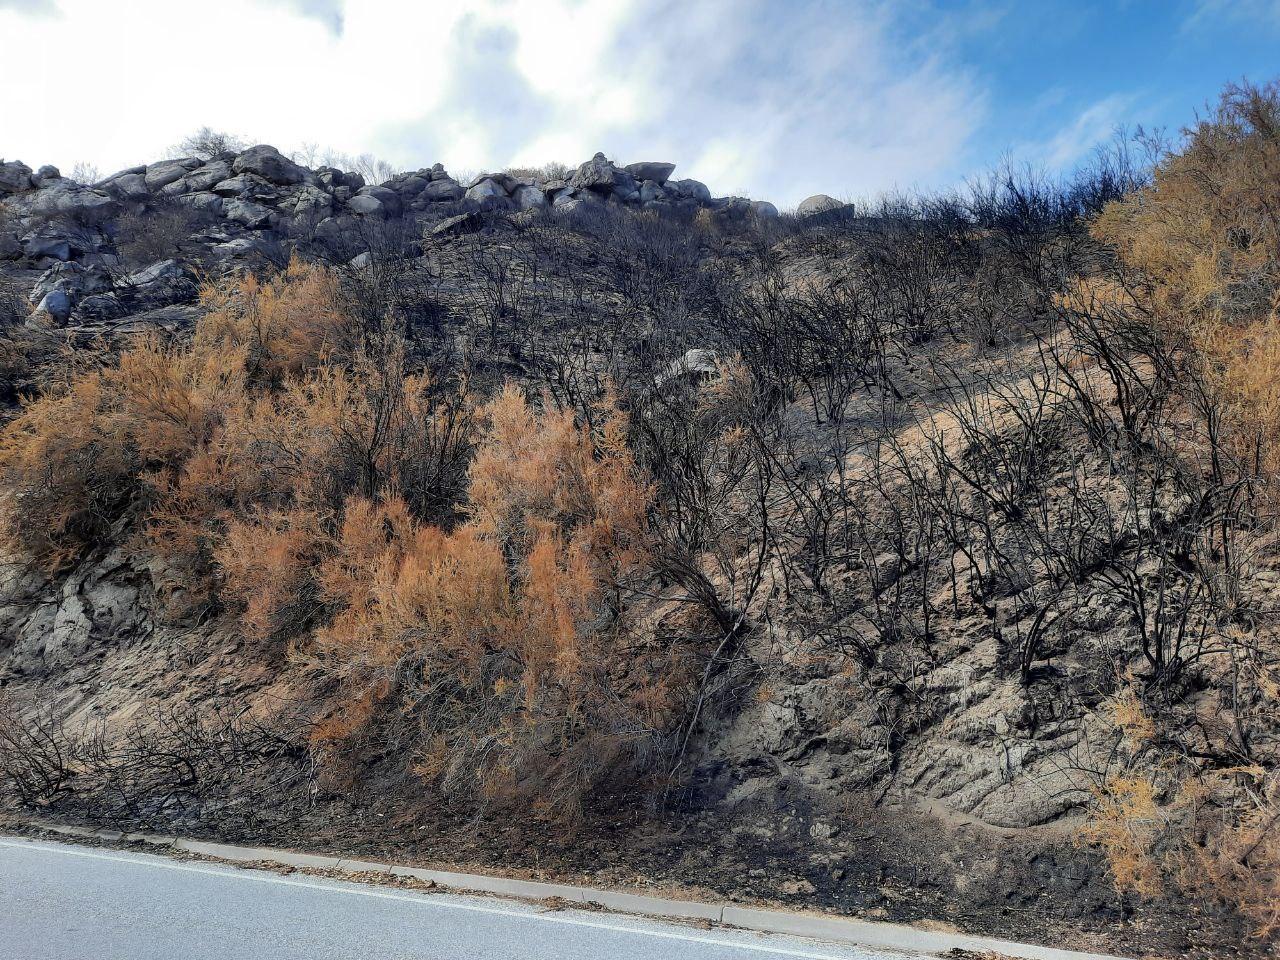 Burned vegetation on slope along paved road